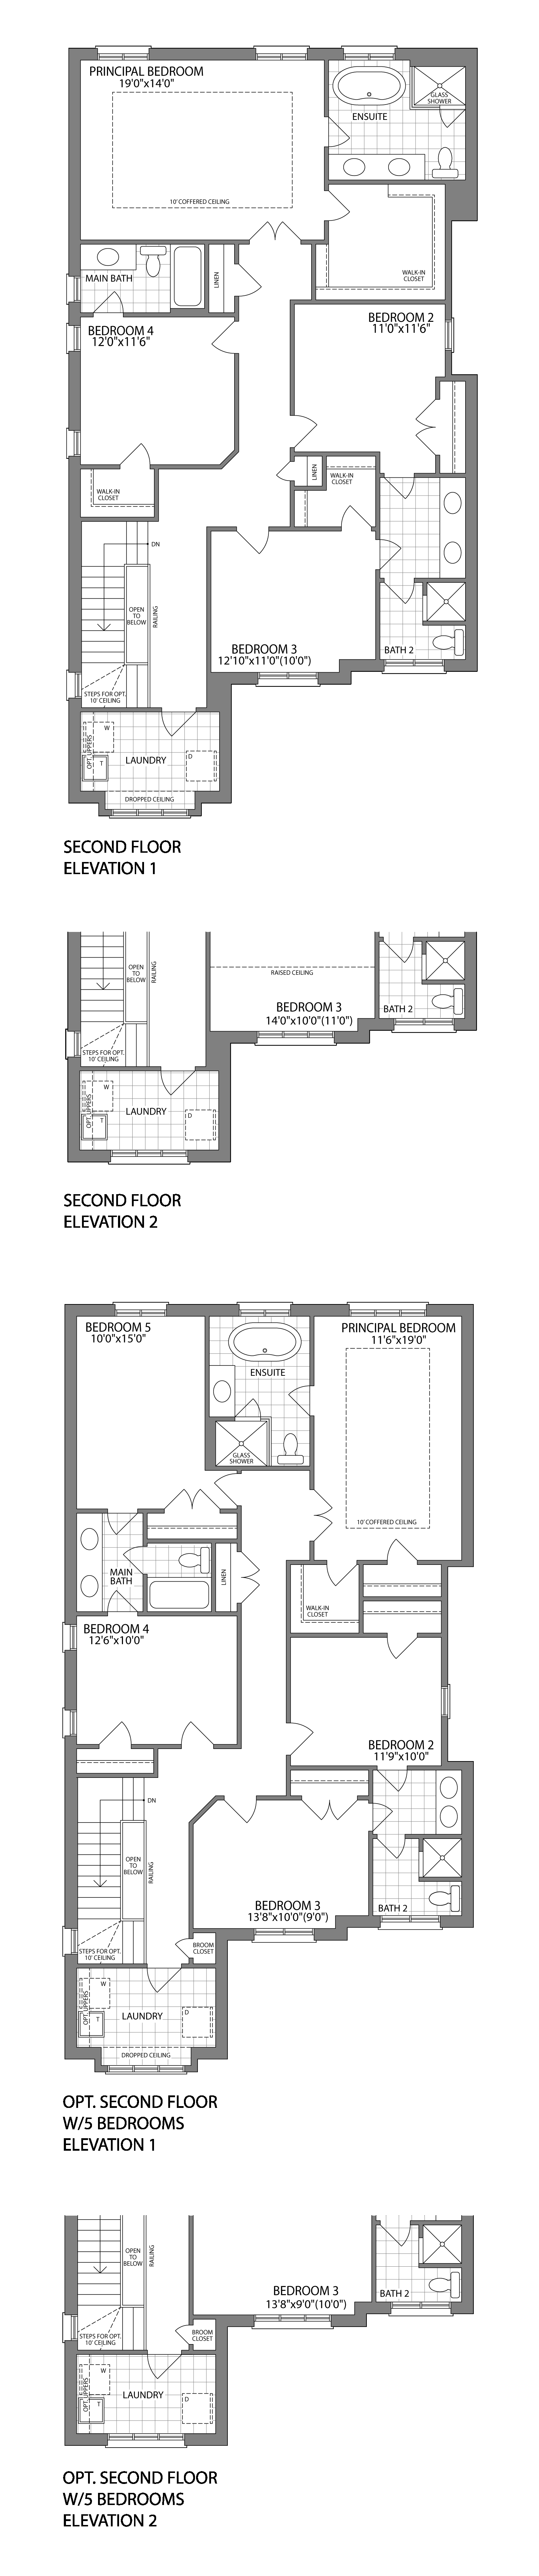 The Gladstone Second Floor